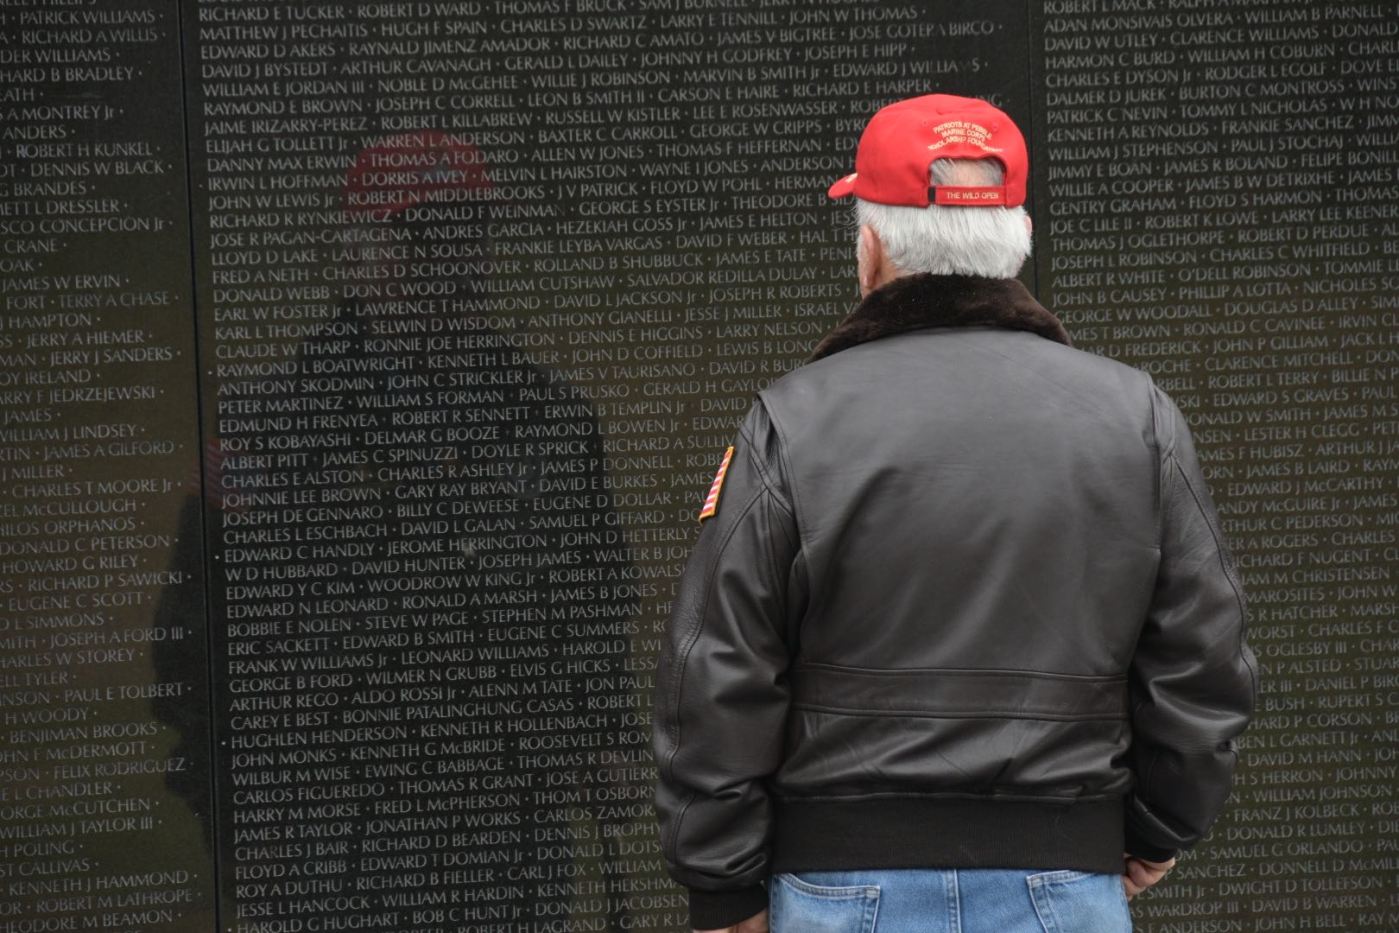 Vietnam Veteran stands in front of Vietnam Memorial Wall.